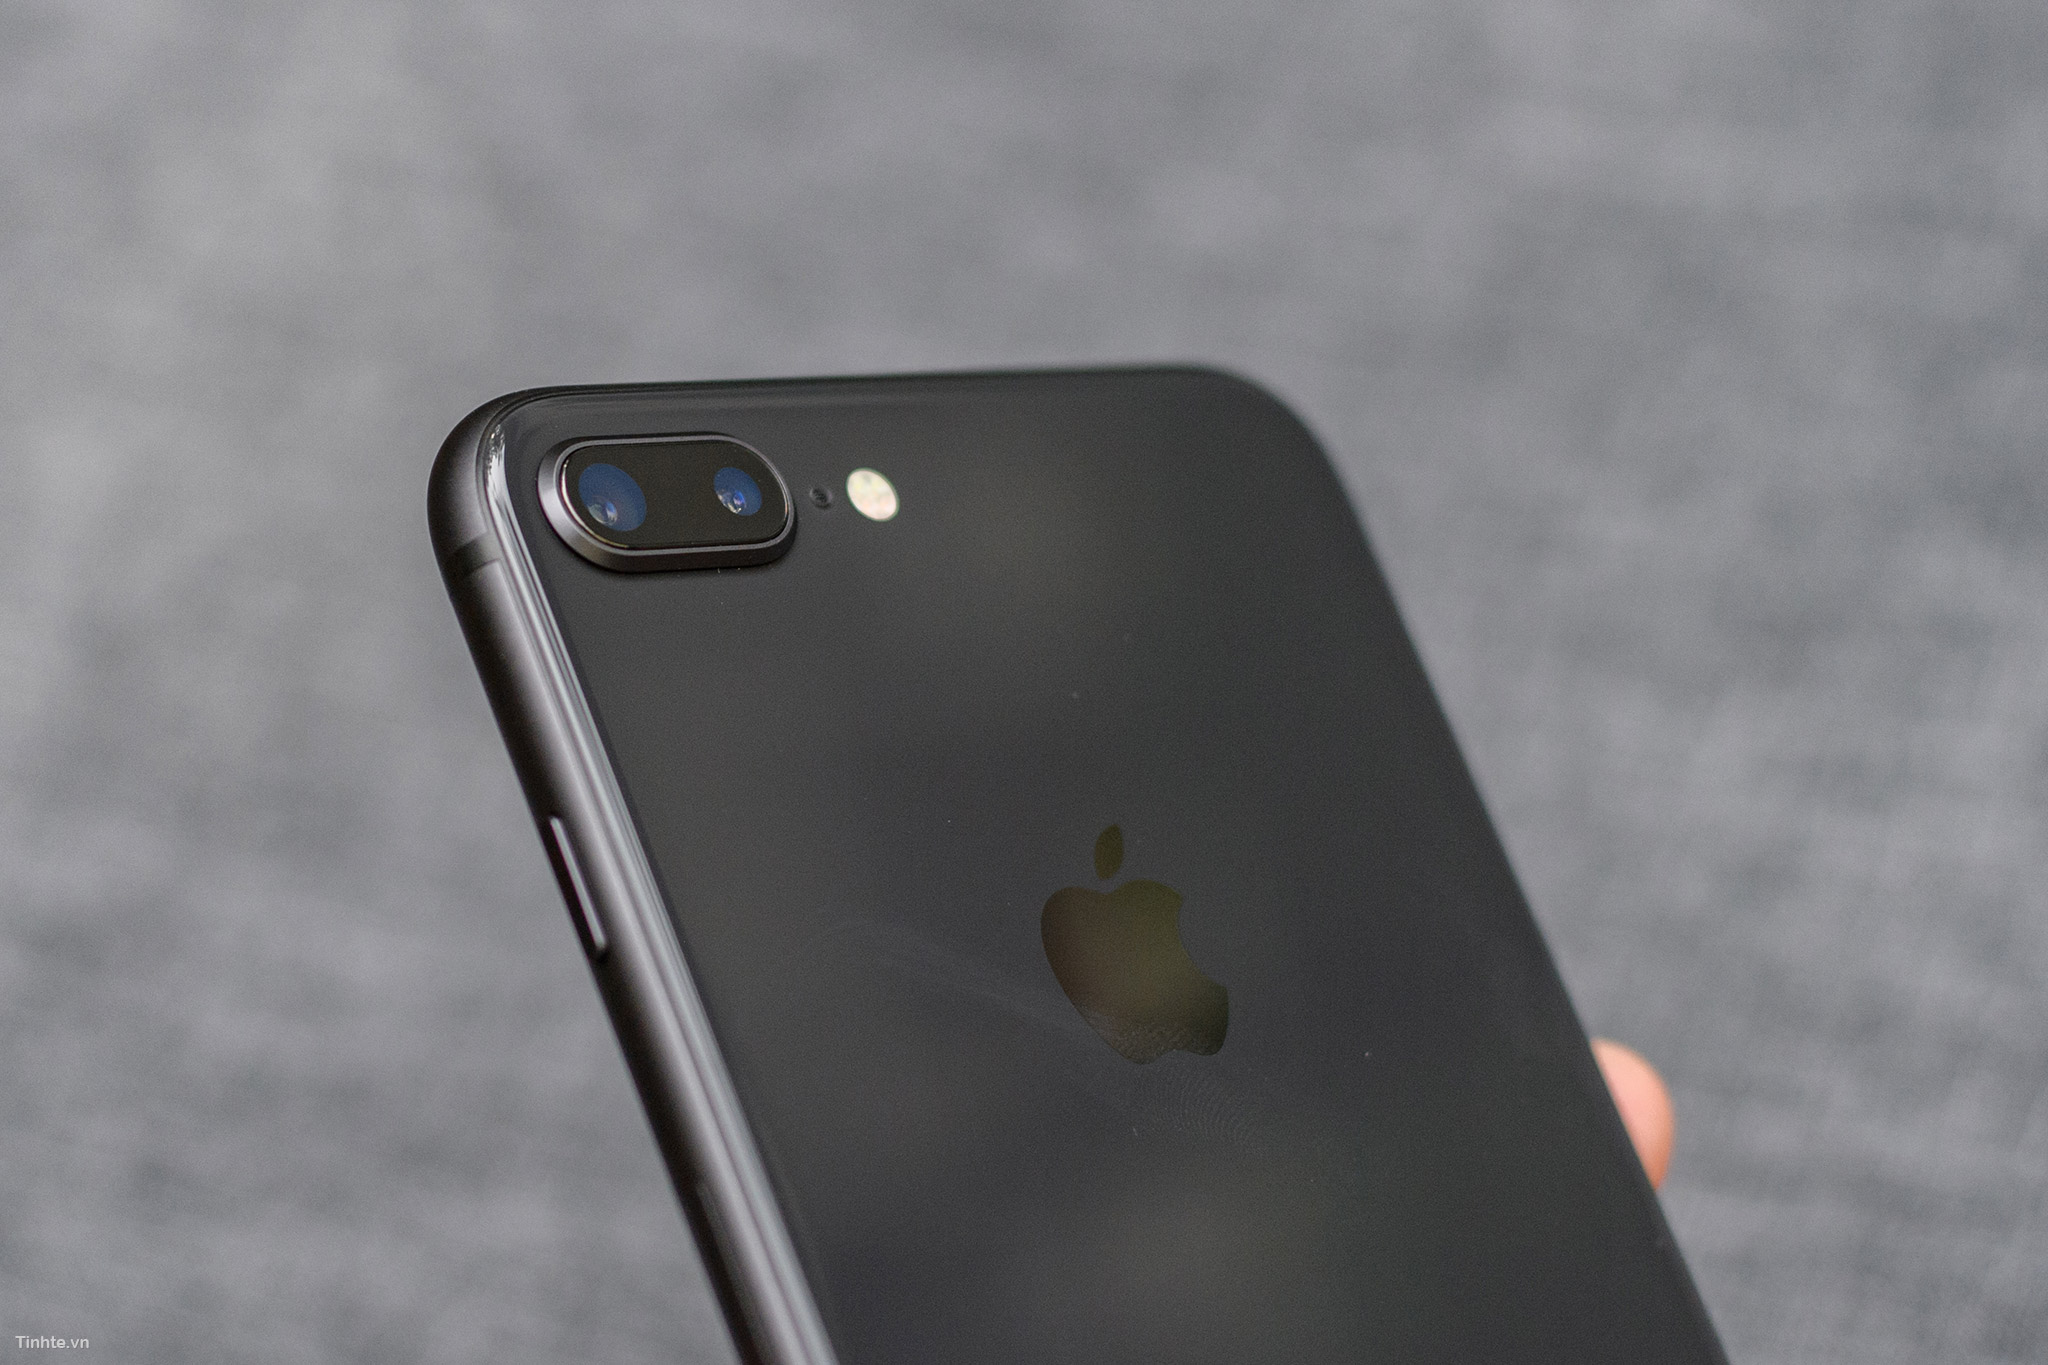 iPhone 8 Plus màu Space Gray với thiết kế đẹp mắt, camera chất lượng cao và hiệu năng mạnh mẽ là một trong những điện thoại được yêu thích nhất hiện nay. Hãy xem bức hình và cảm nhận sự khác biệt của sản phẩm này.